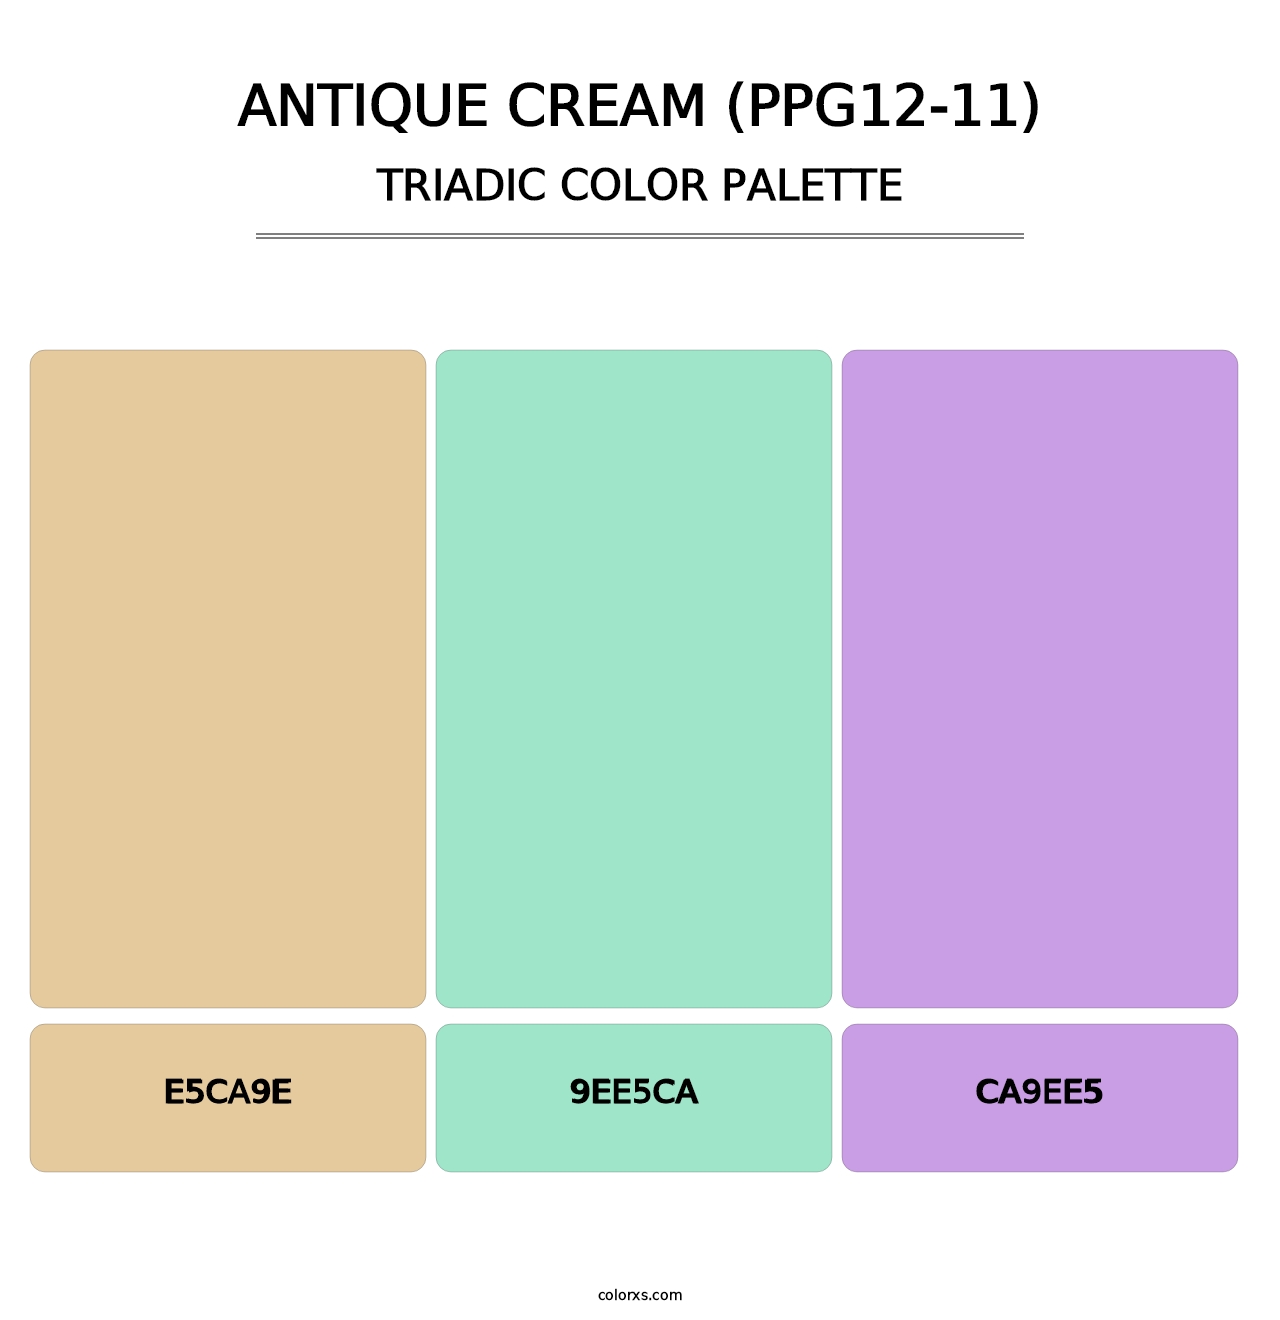 Antique Cream (PPG12-11) - Triadic Color Palette